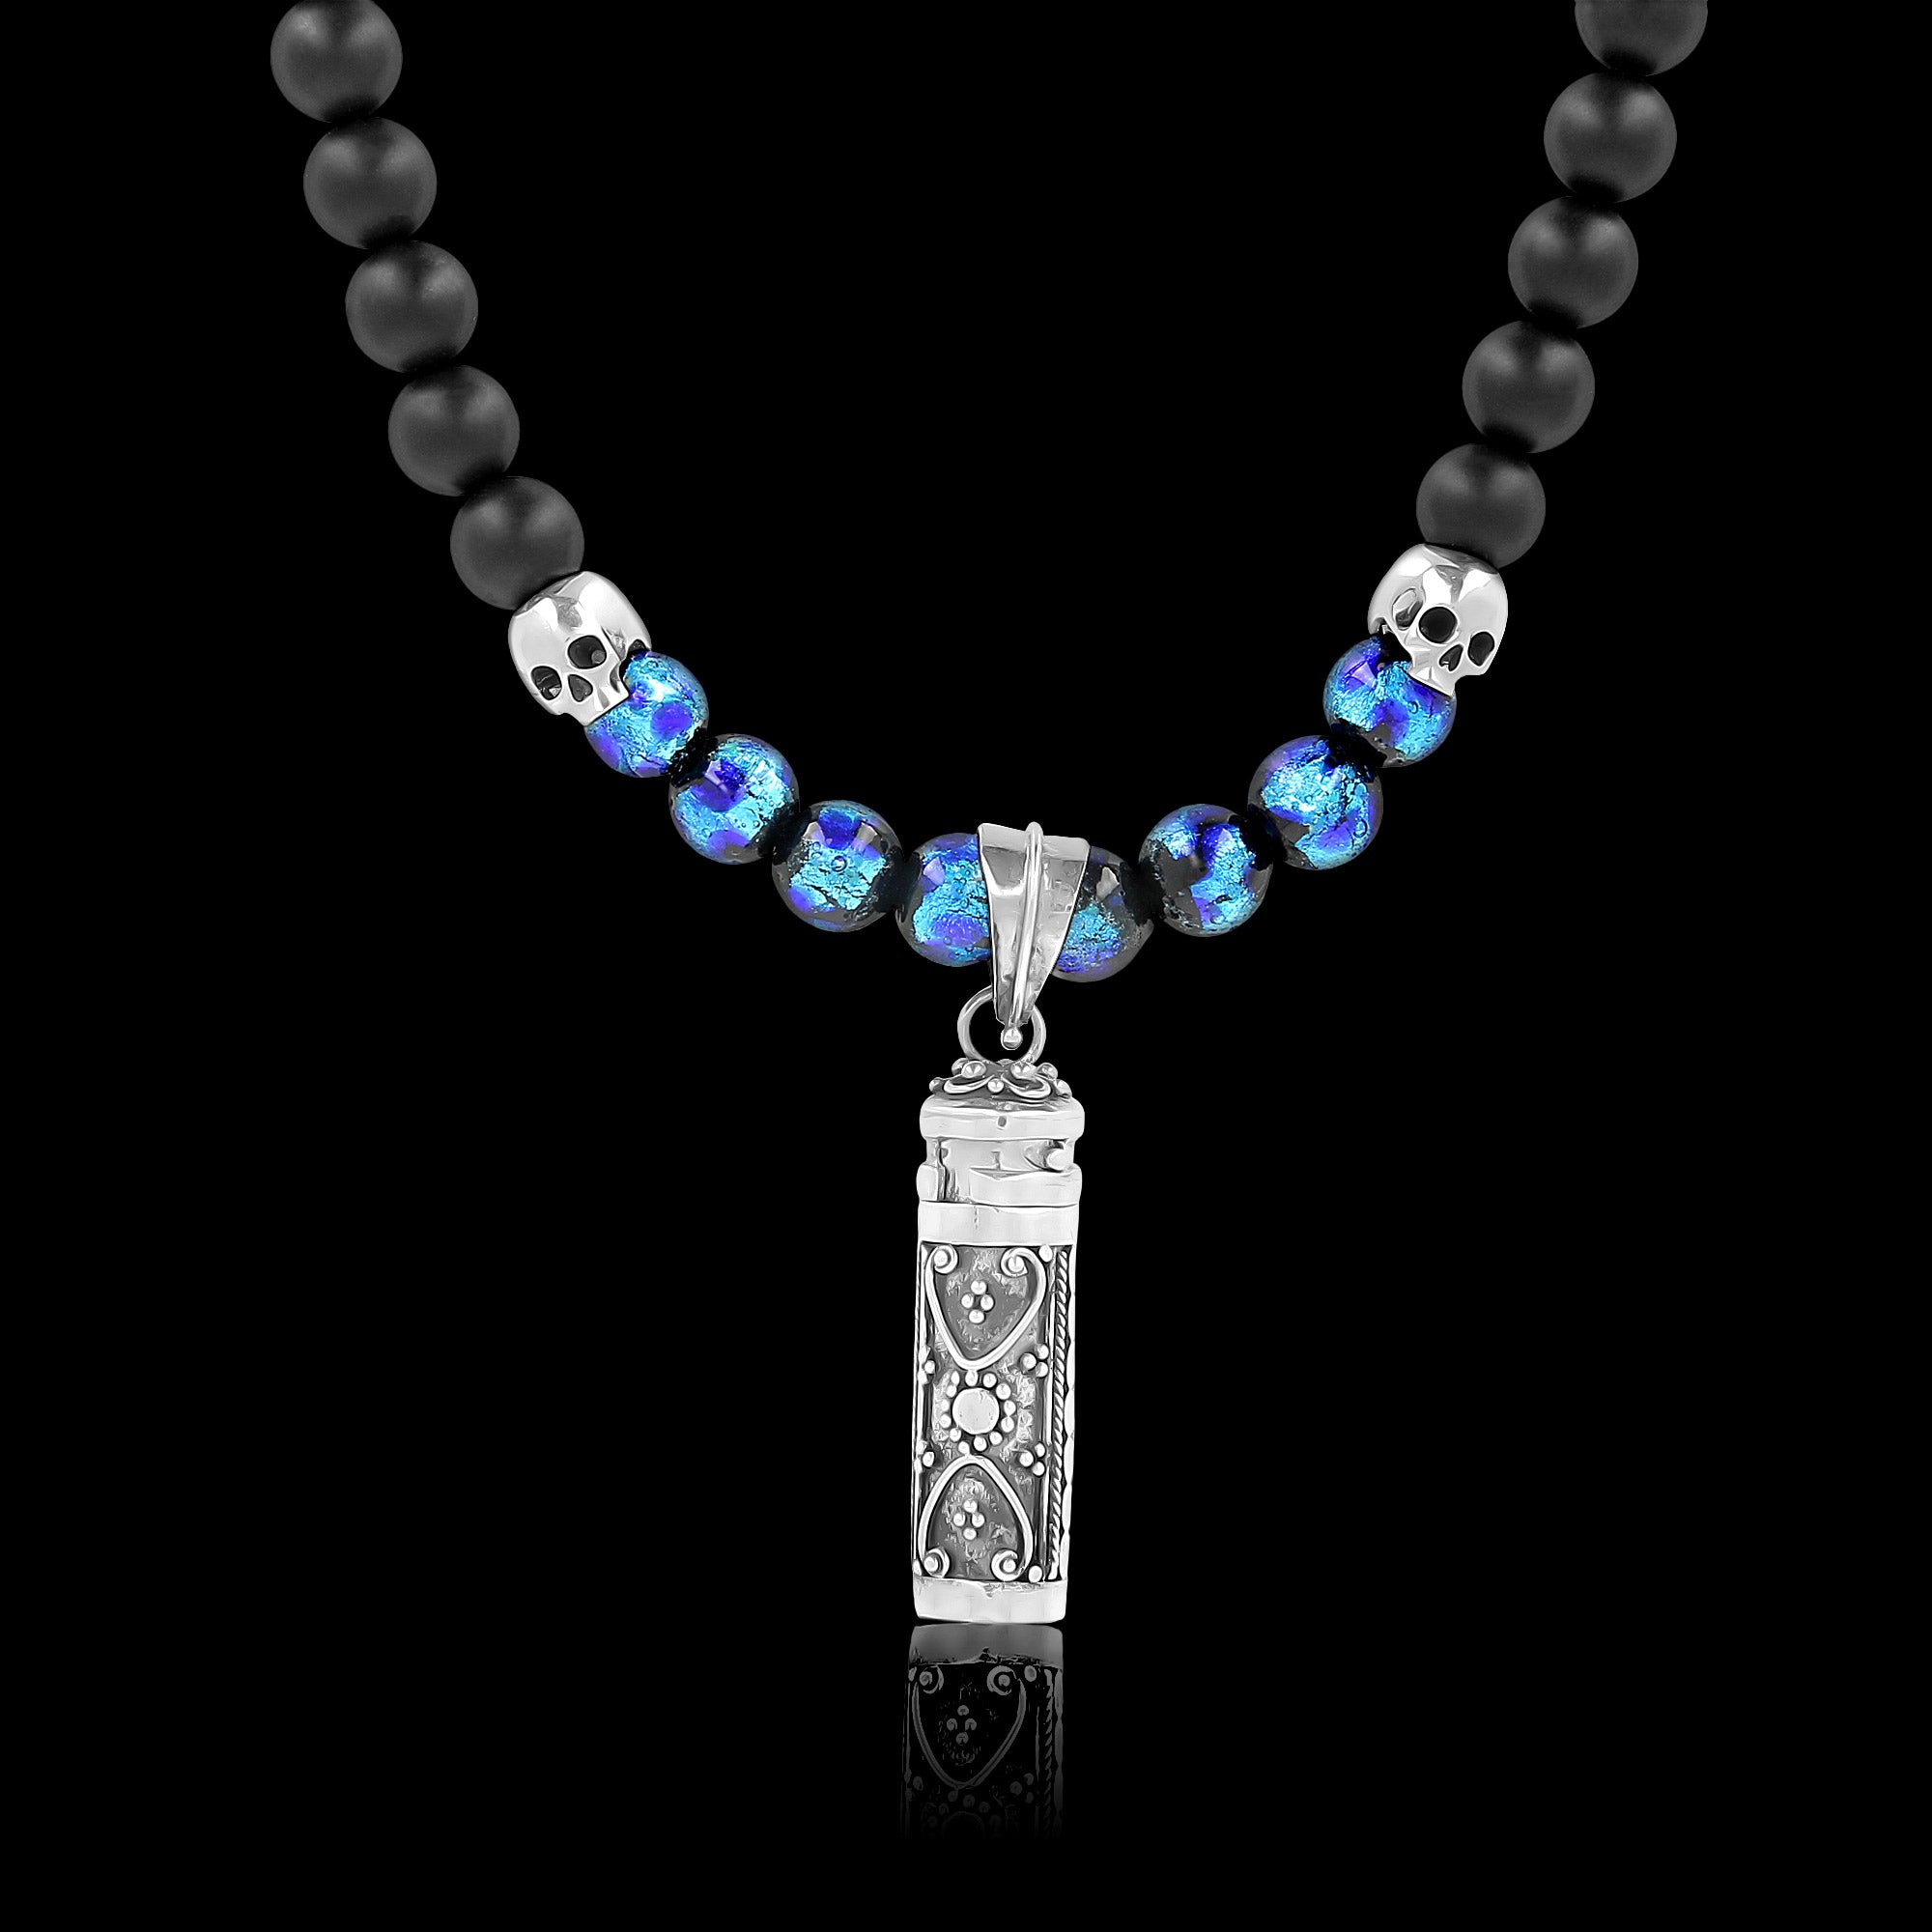 Leucosia - Lange Halskette aus Halbedelsteinen, Hotaru-Perlen und silbernen Totenköpfen